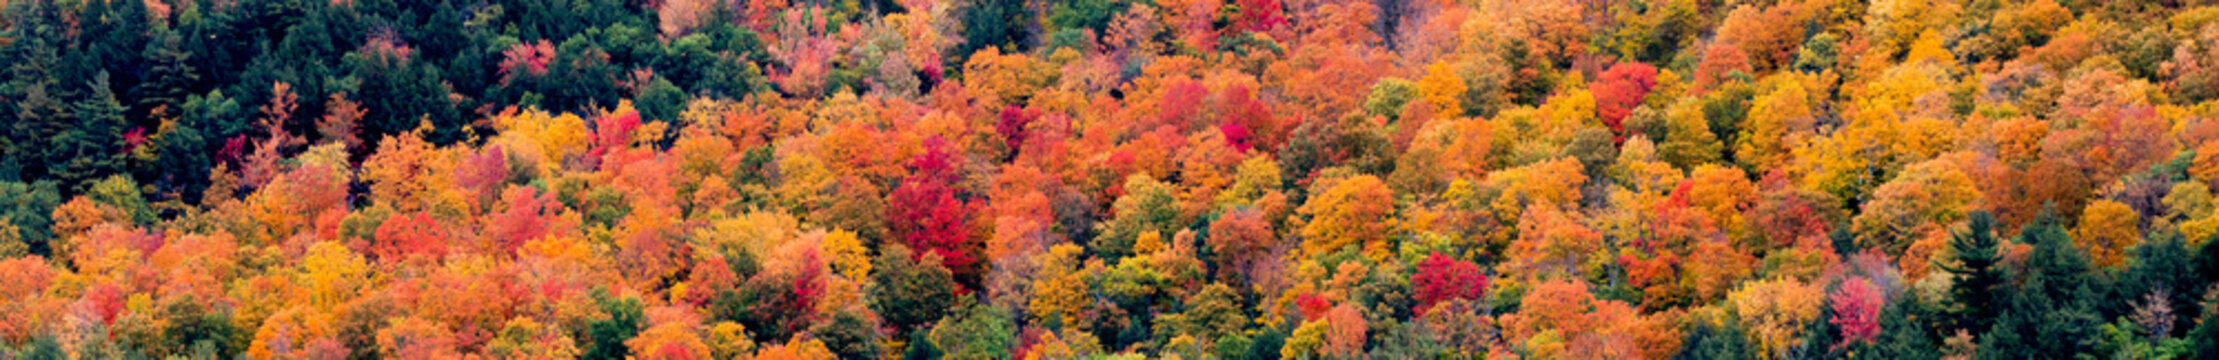 fall foliage © Mark Paul